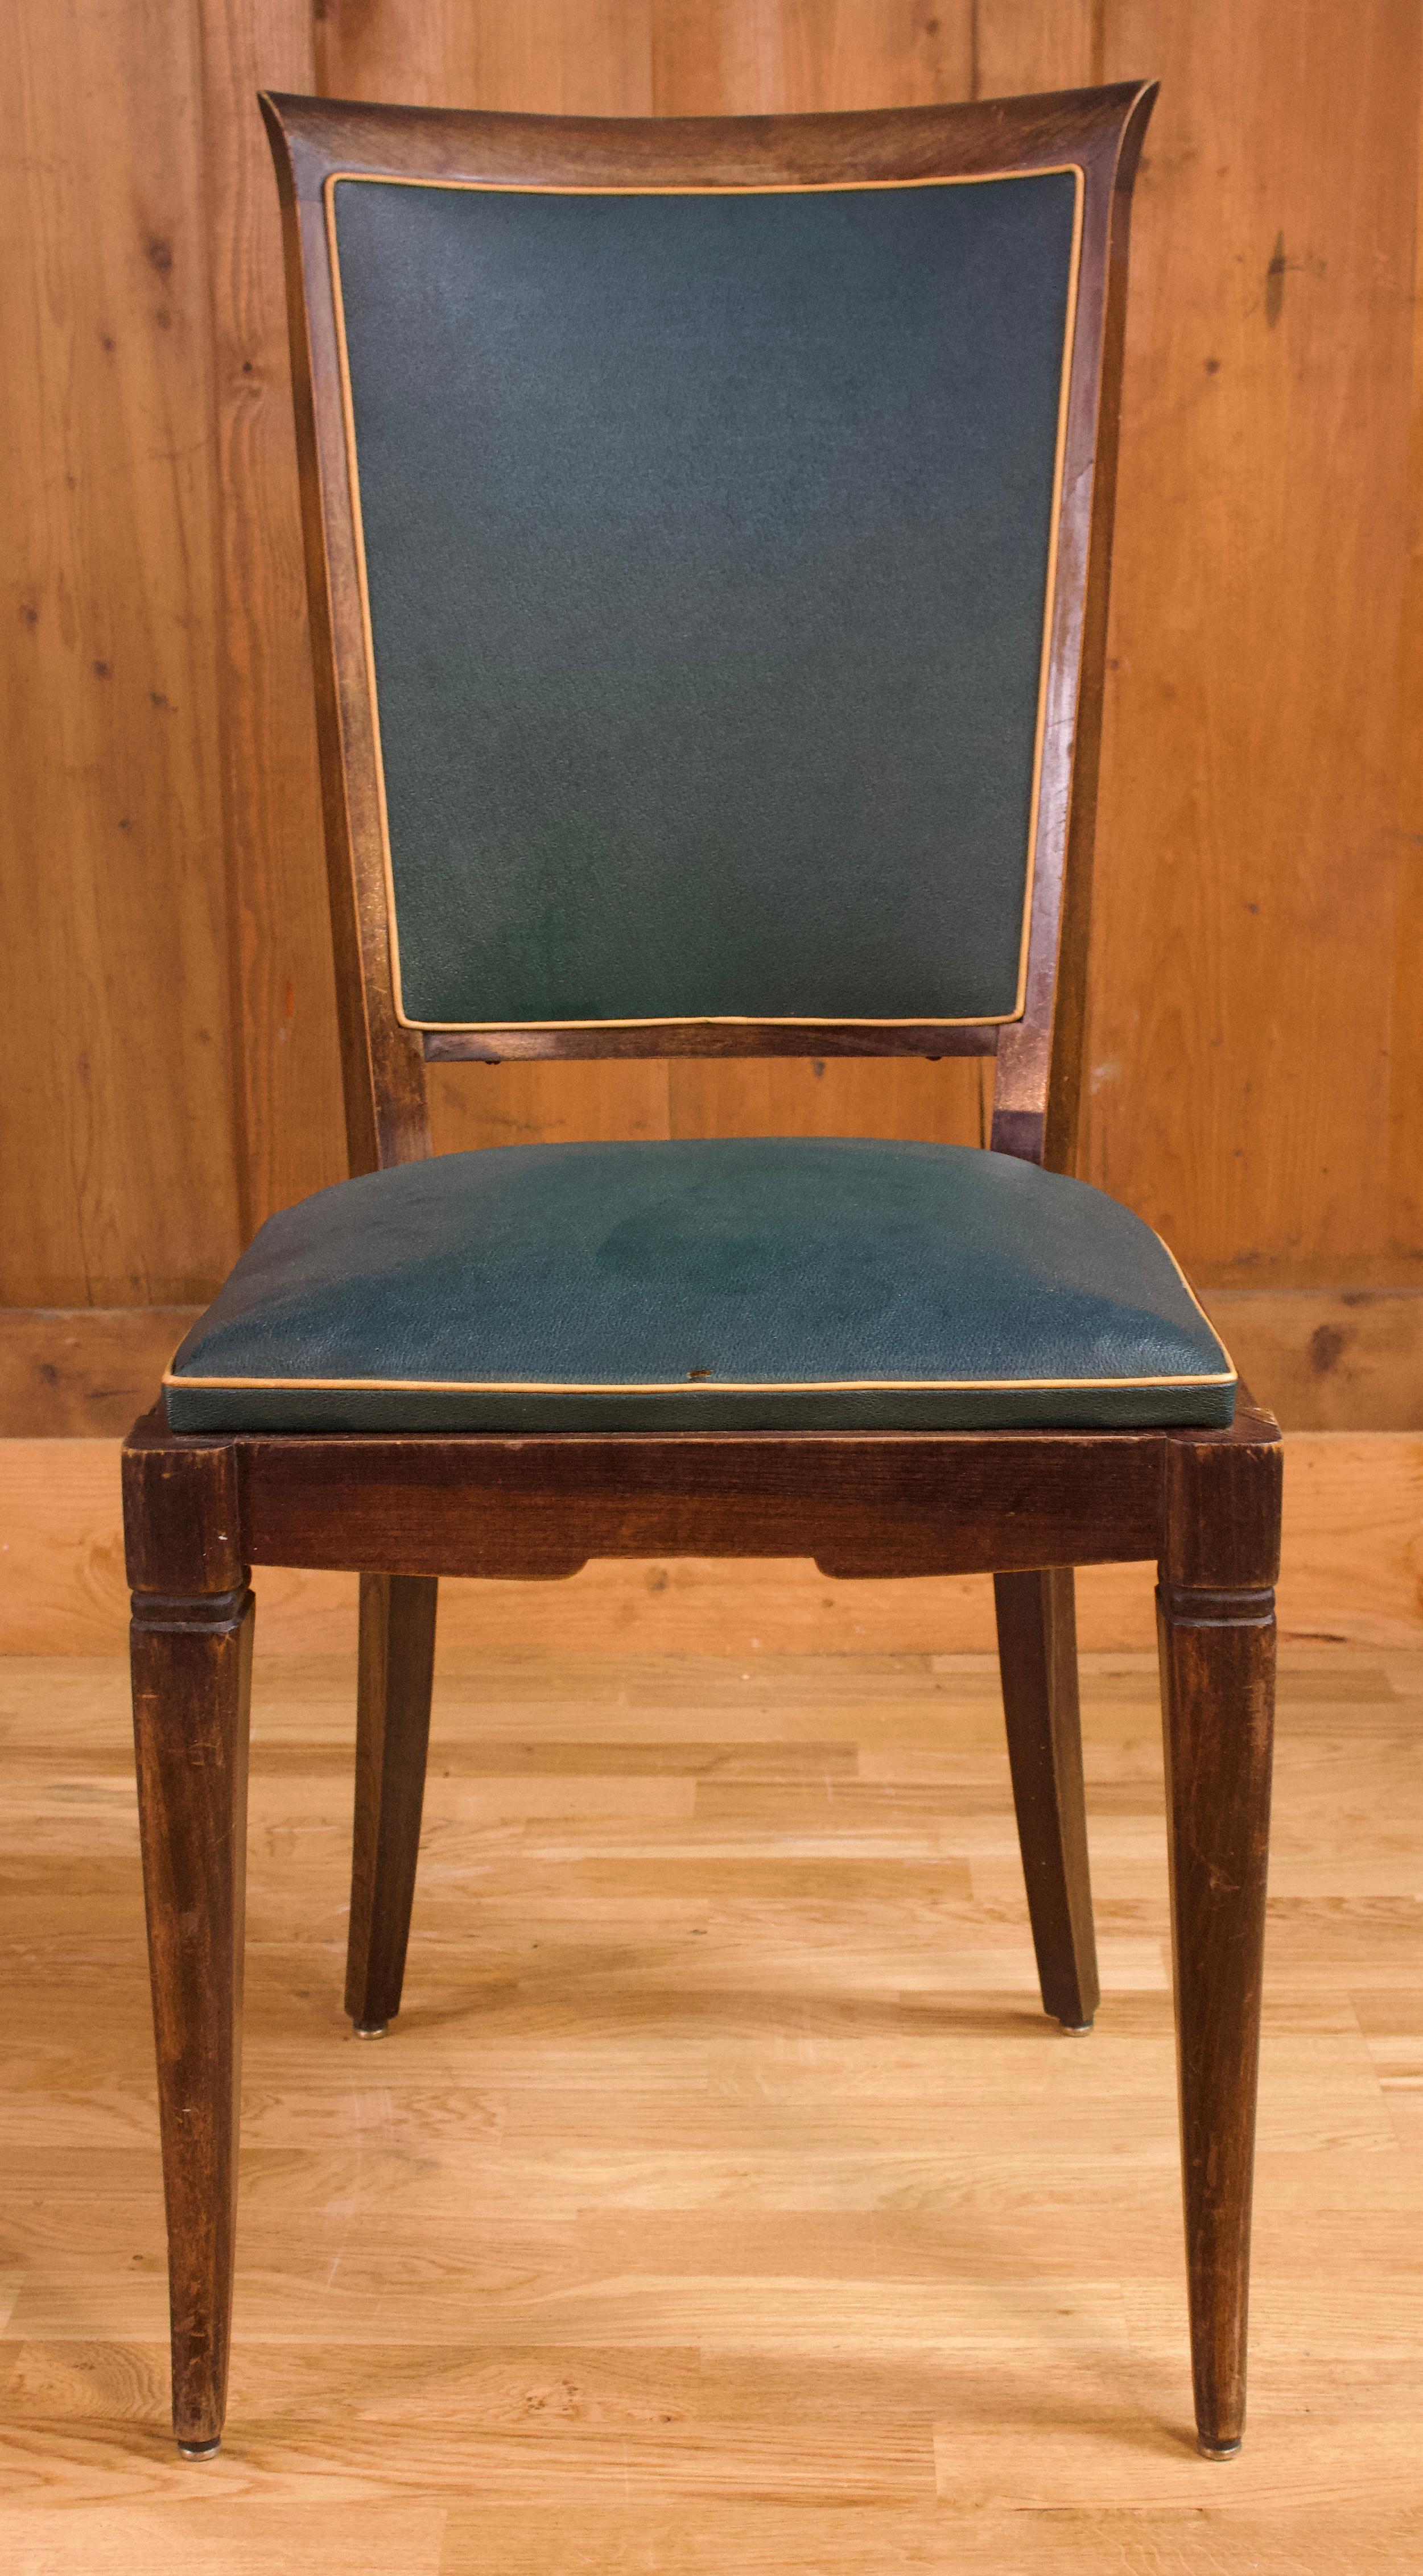 Ensemble de fauteuils de salon art déco de très bonne qualité avec des pieds avant légèrement incurvés. La couleur du faux cuir est vert jaguar avec une bordure dorée. Le dos est légèrement arqué.

Vers 1950.
 